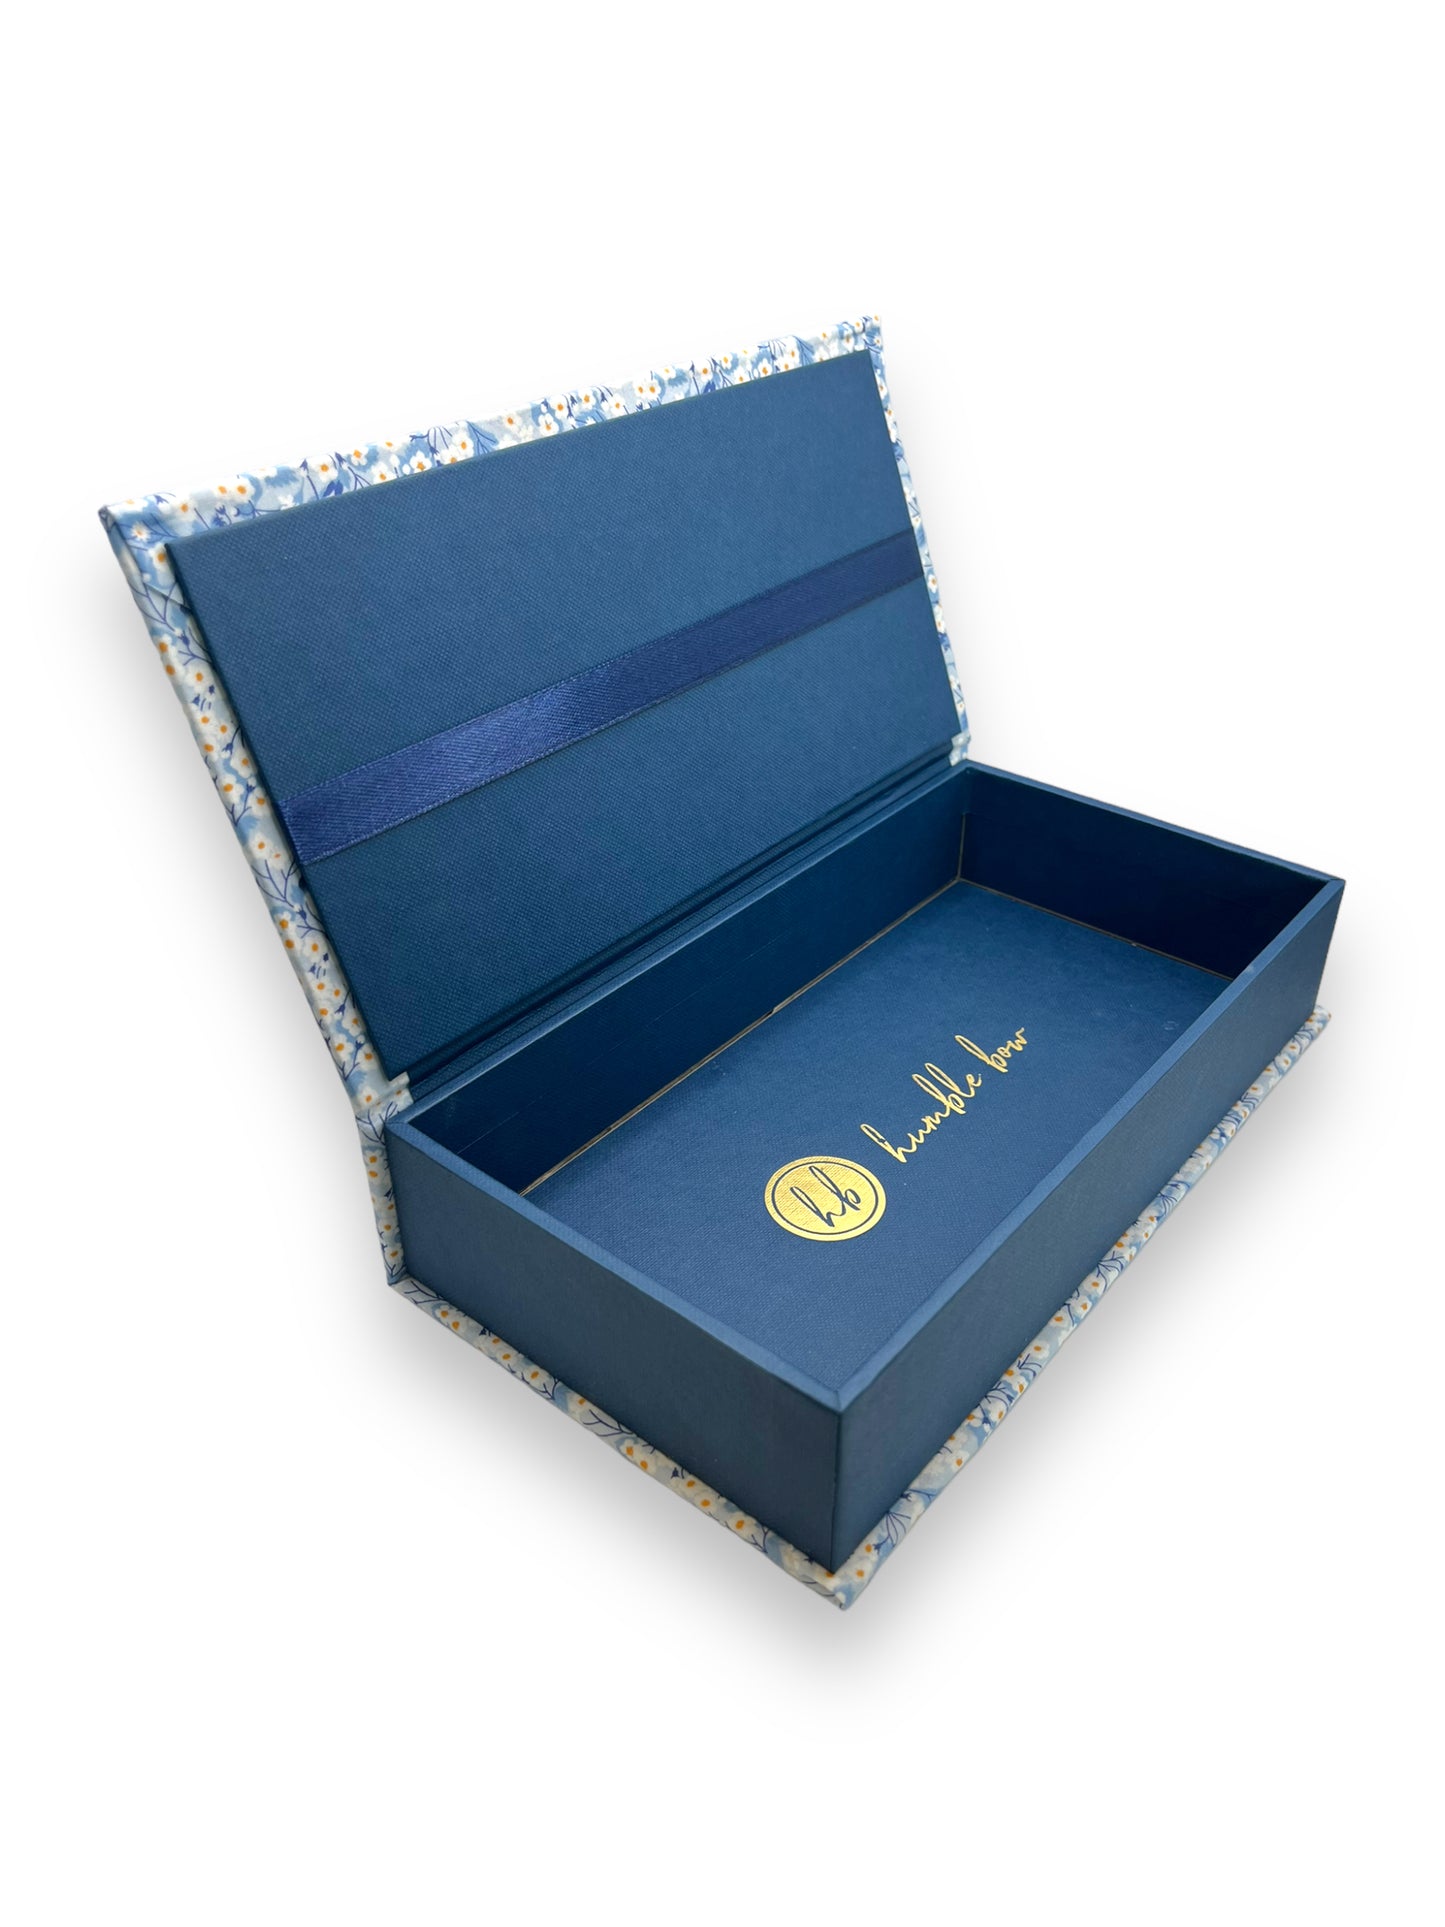 Fabric Wrapped Box - Liberty Mitsi Blue